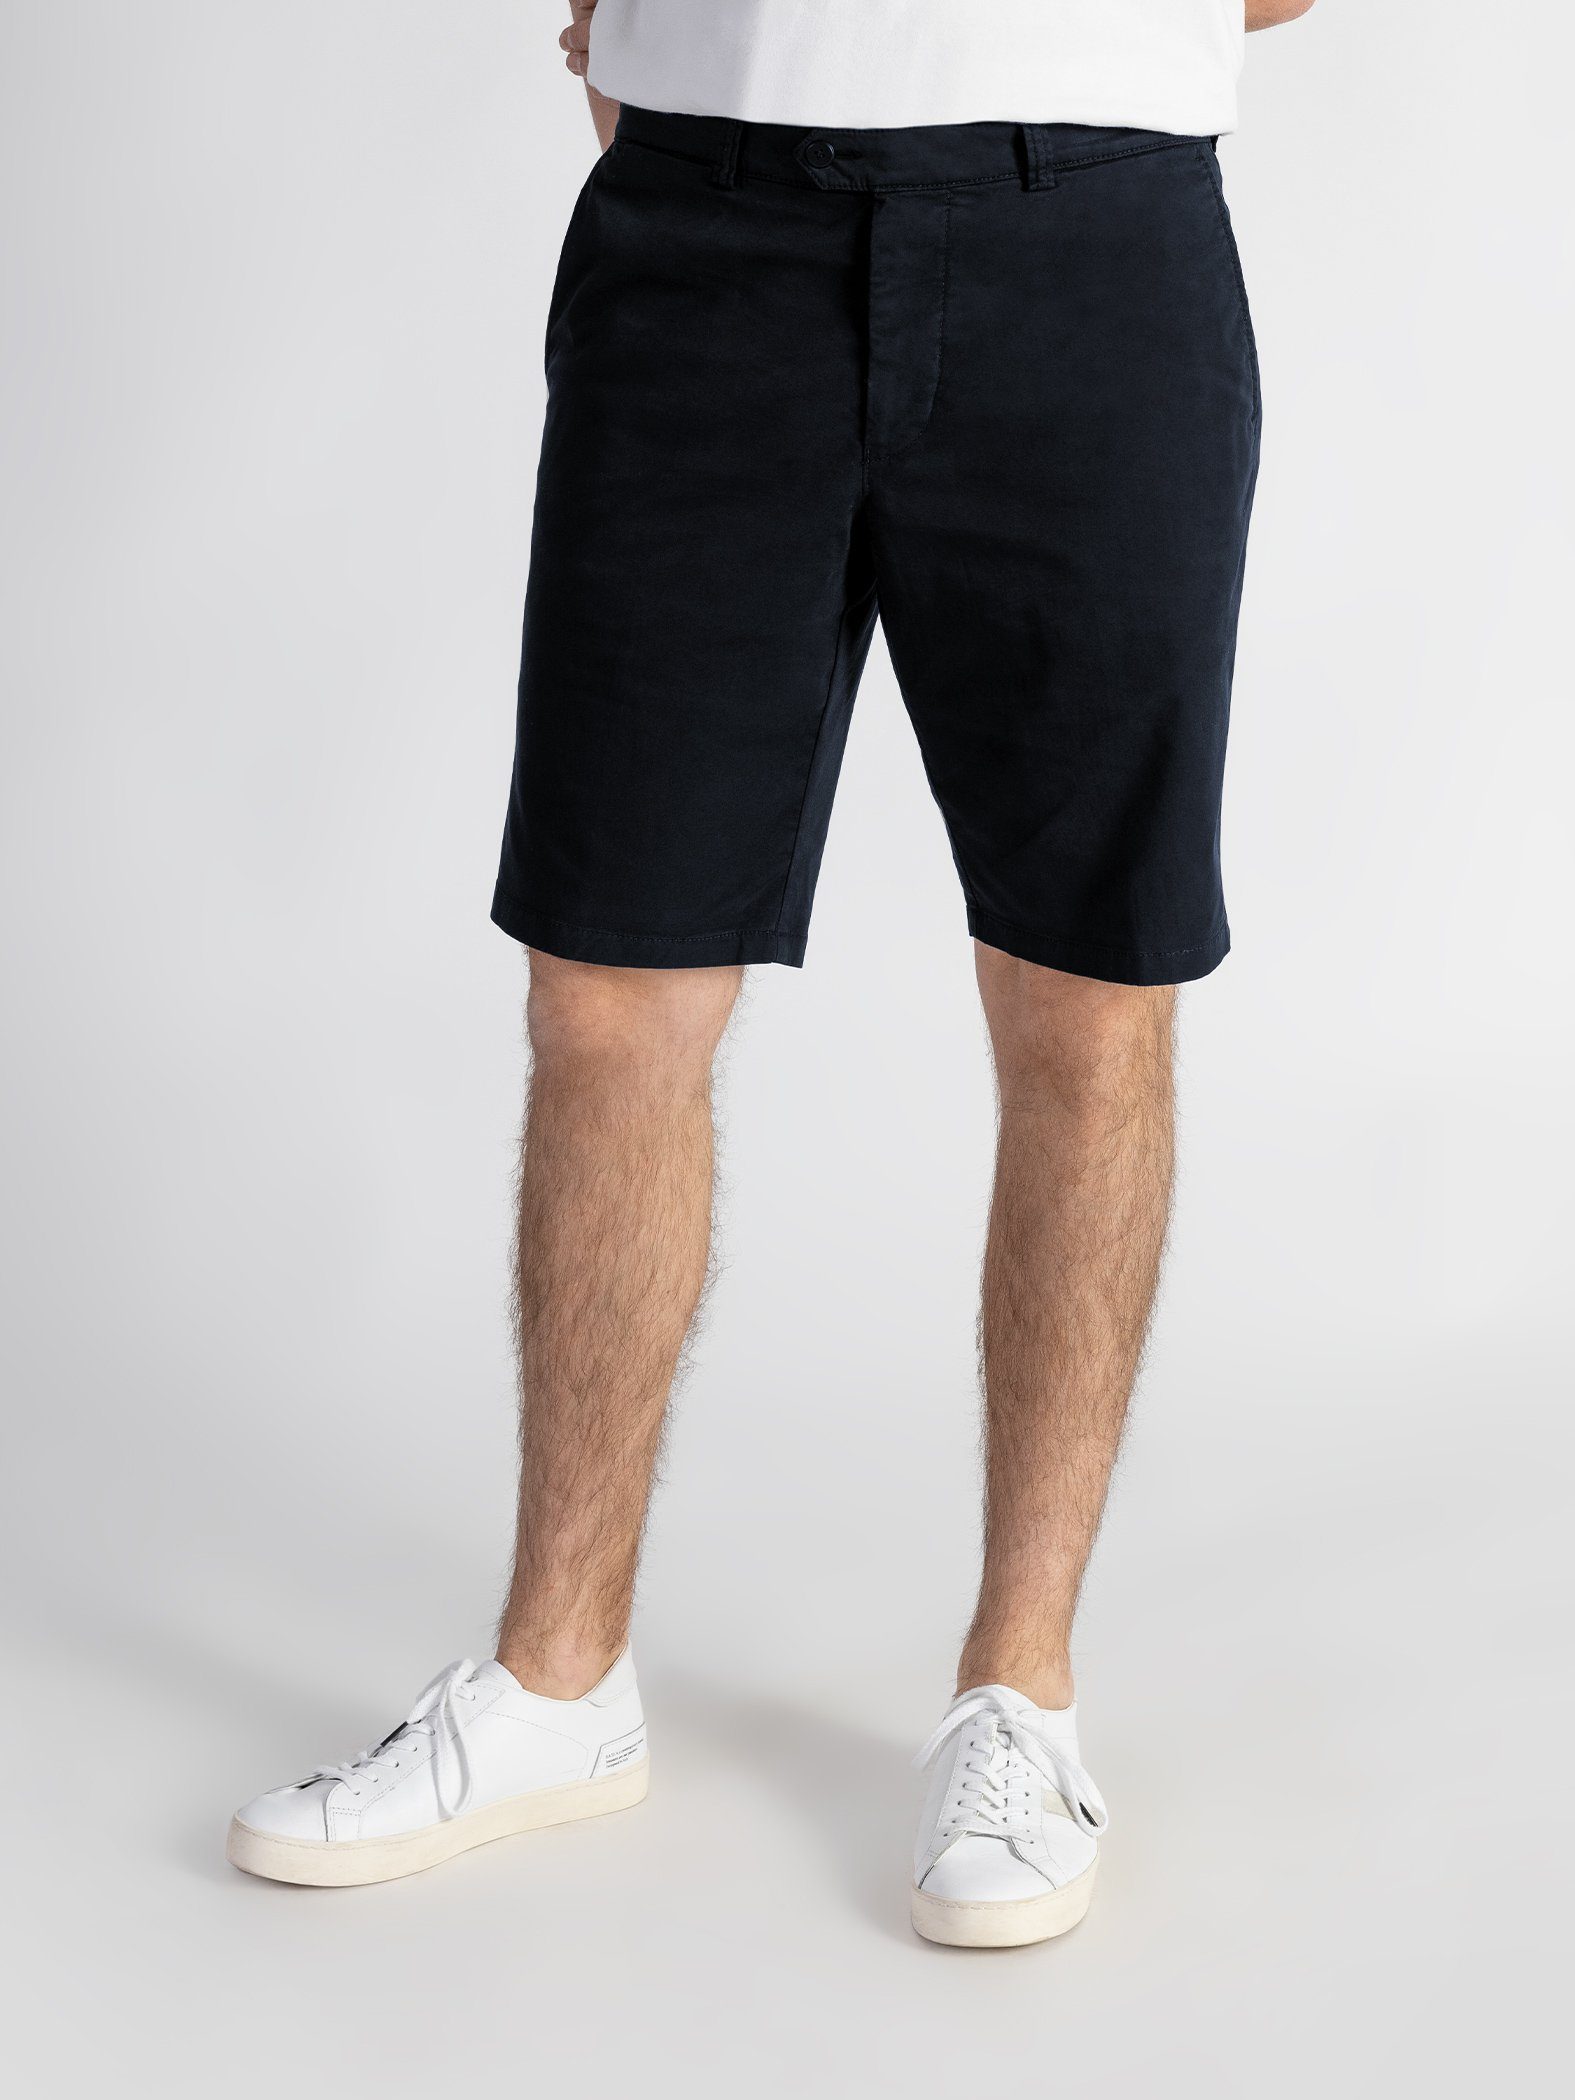 GOTS-zertifiziert Shorts Dunkelblau Shorts TwoMates mit Farbauswahl, elastischem Bund,